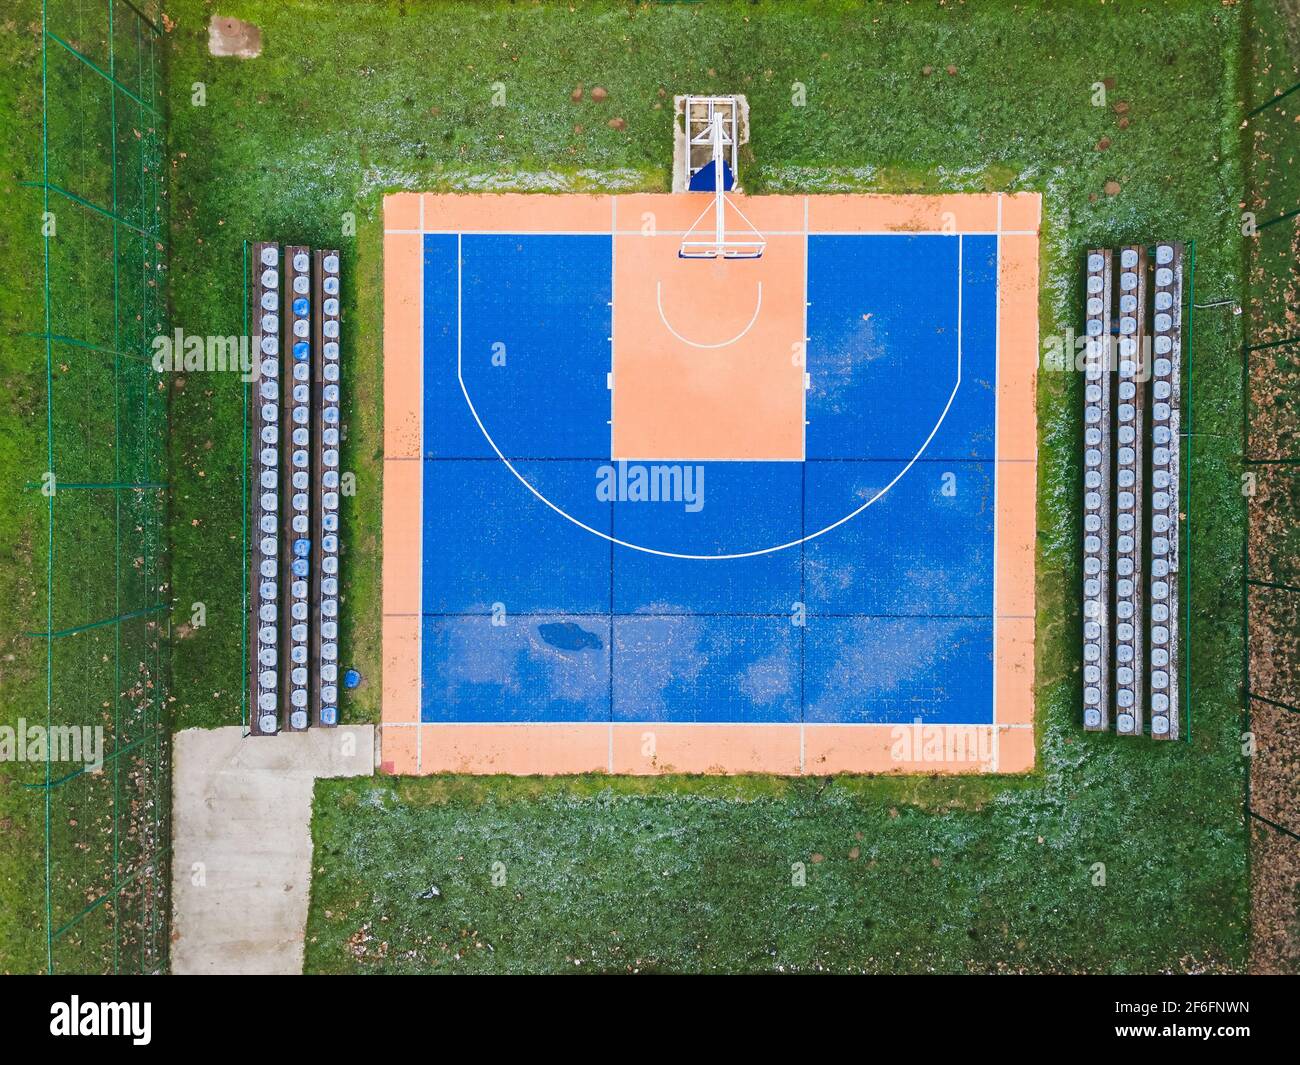 Buntes Basketballfeld von oben. Outdoor-Sportplatz mit blauer und orangefarbener Oberfläche für Basketball, Lampen und Bänke für Zuschauer Stockfoto